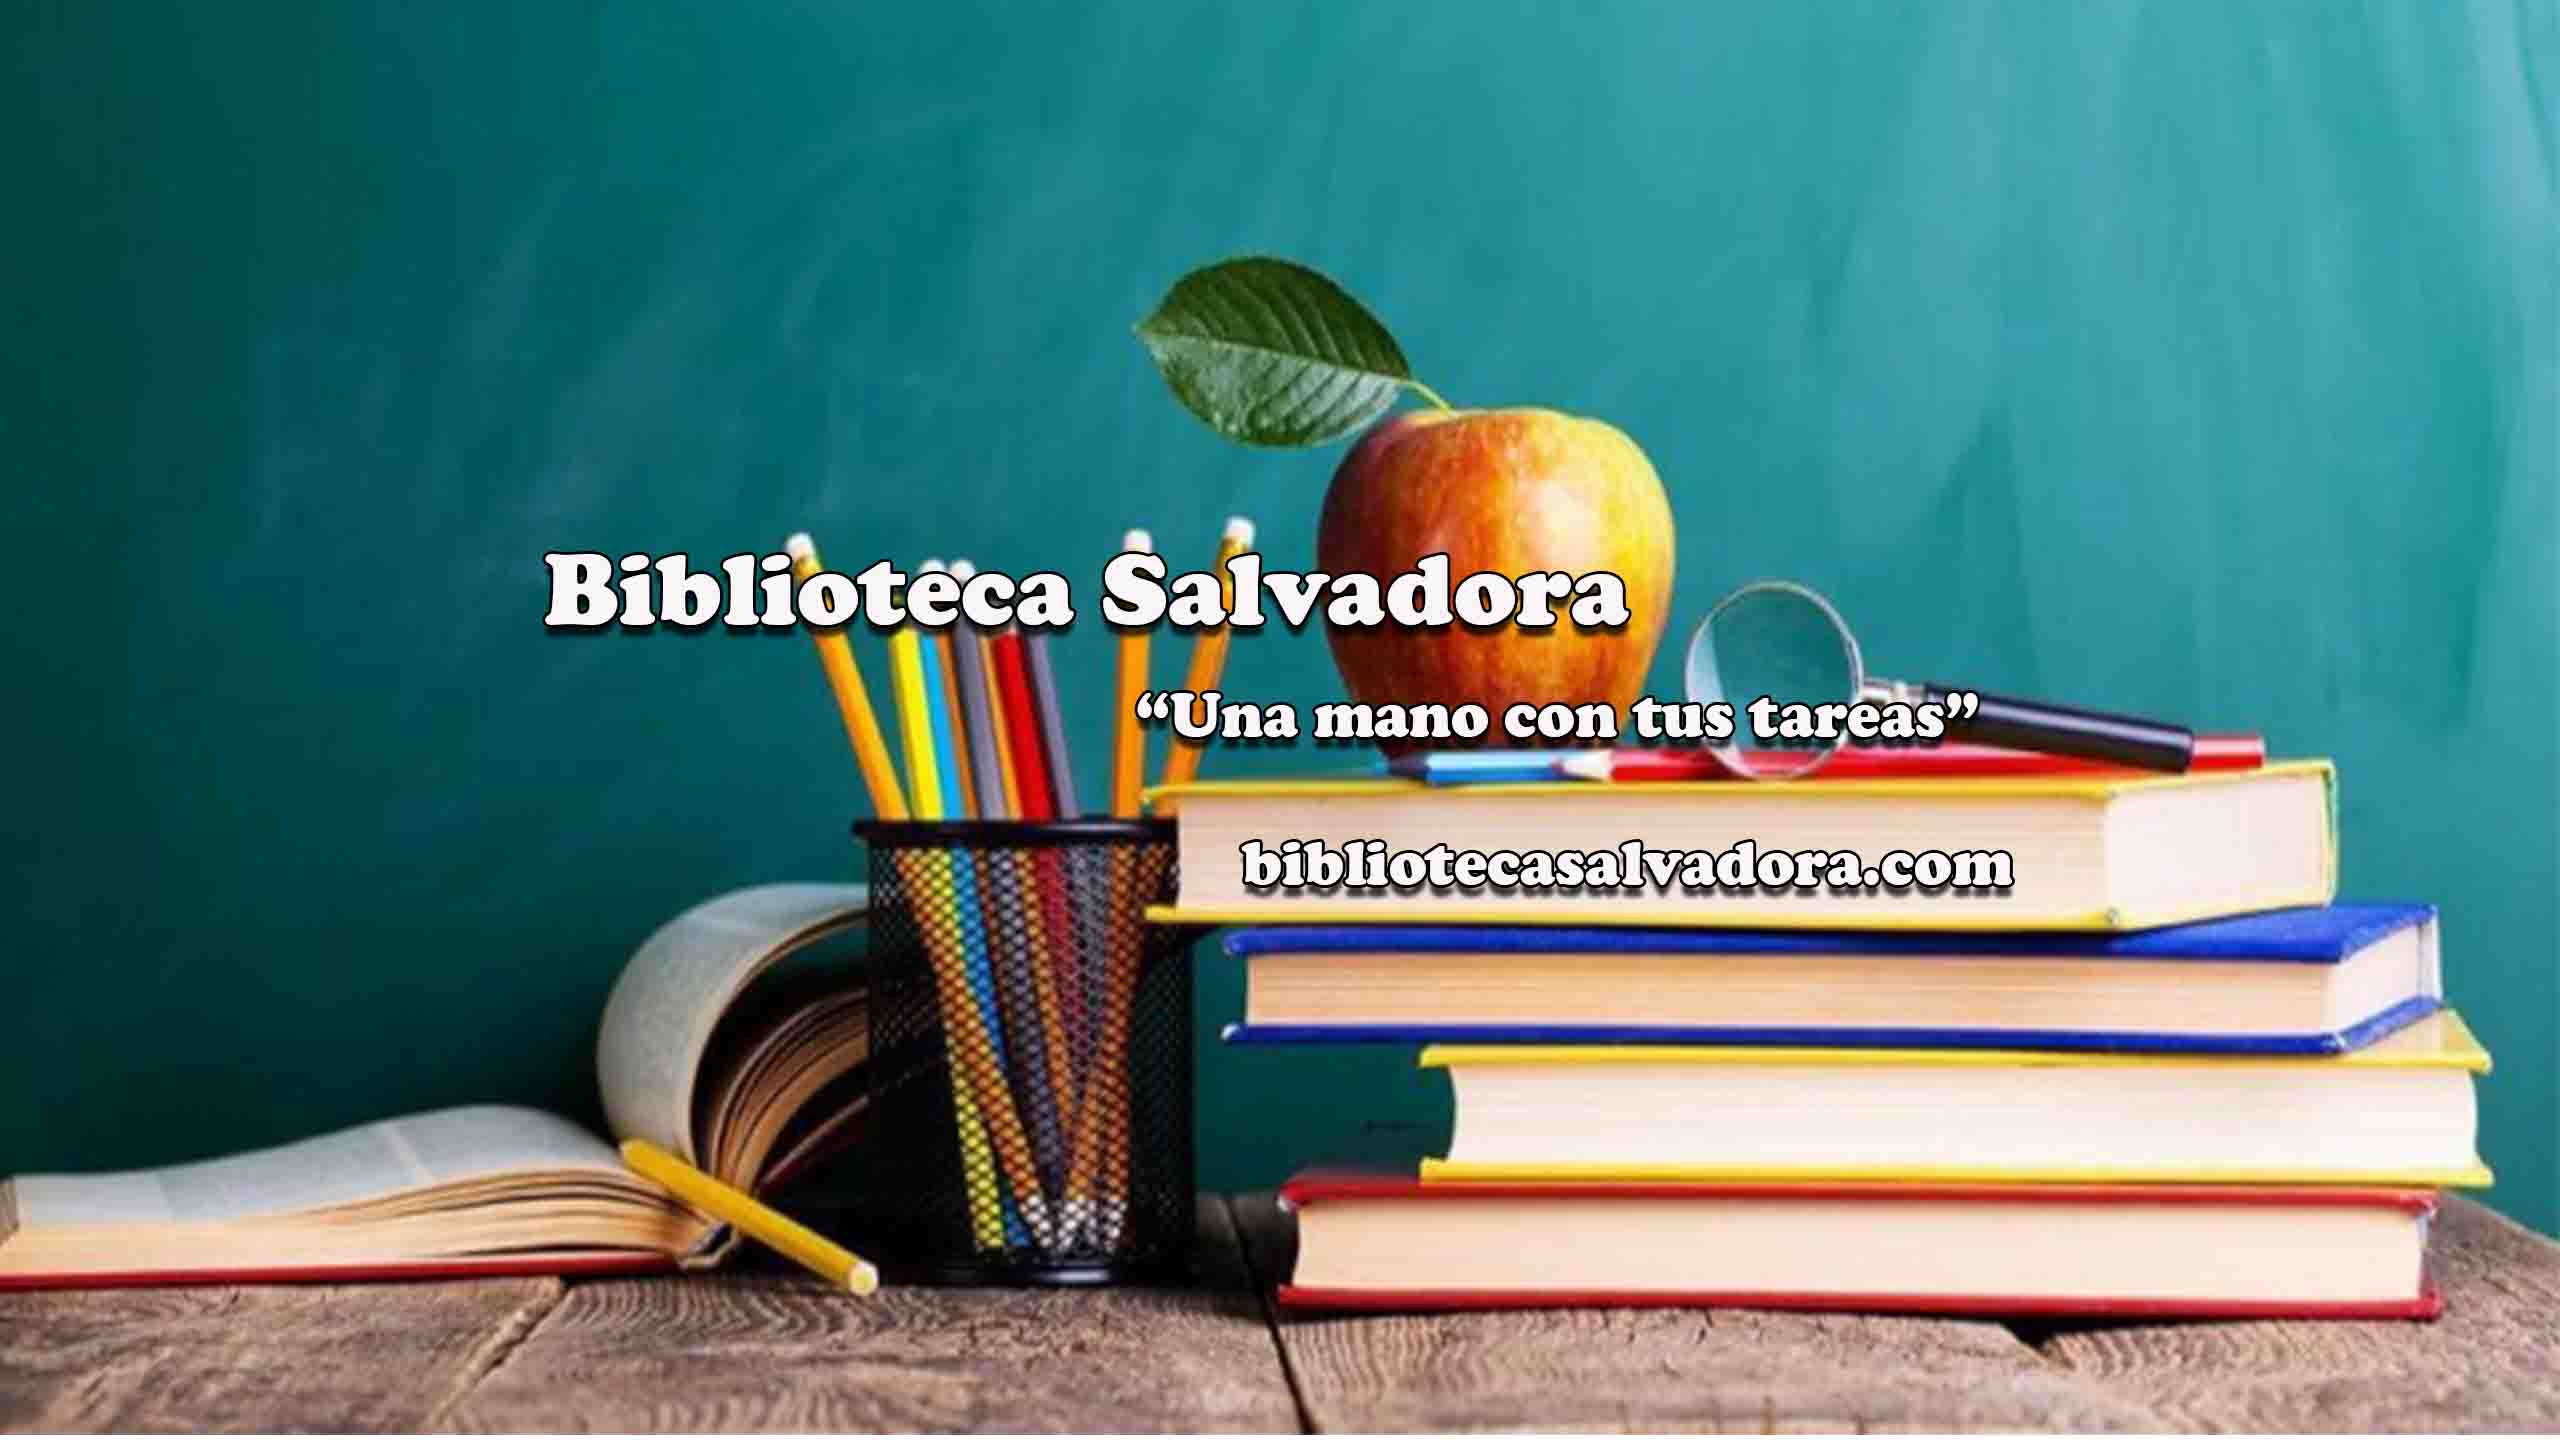 (c) Bibliotecasalvadora.com